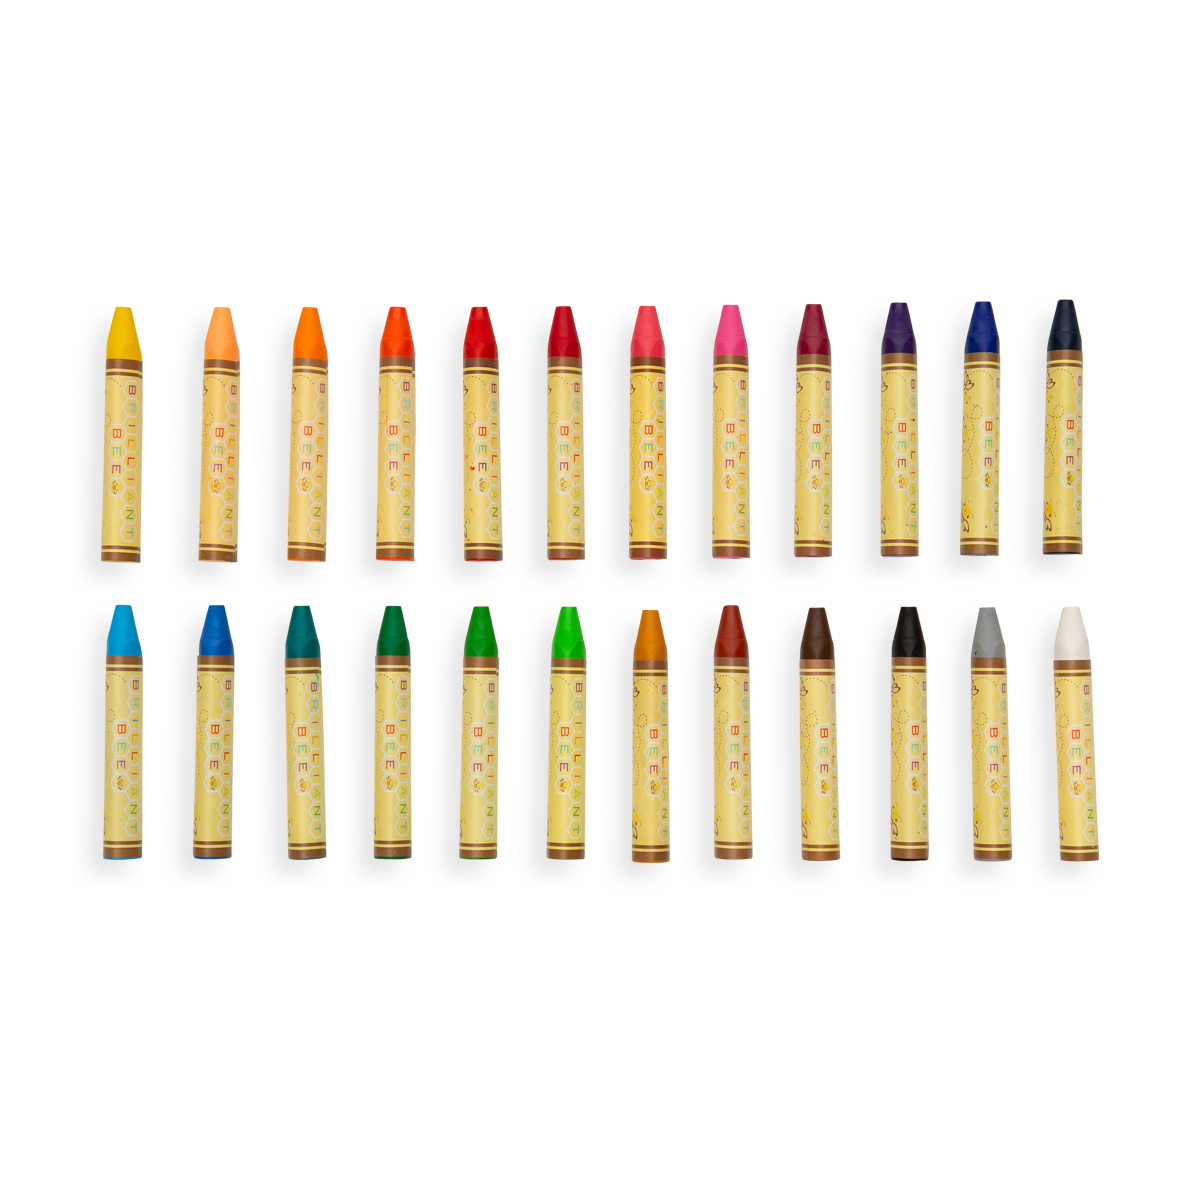  Happido Watercolor Gel Crayons, 48 Piece Set - Smooth